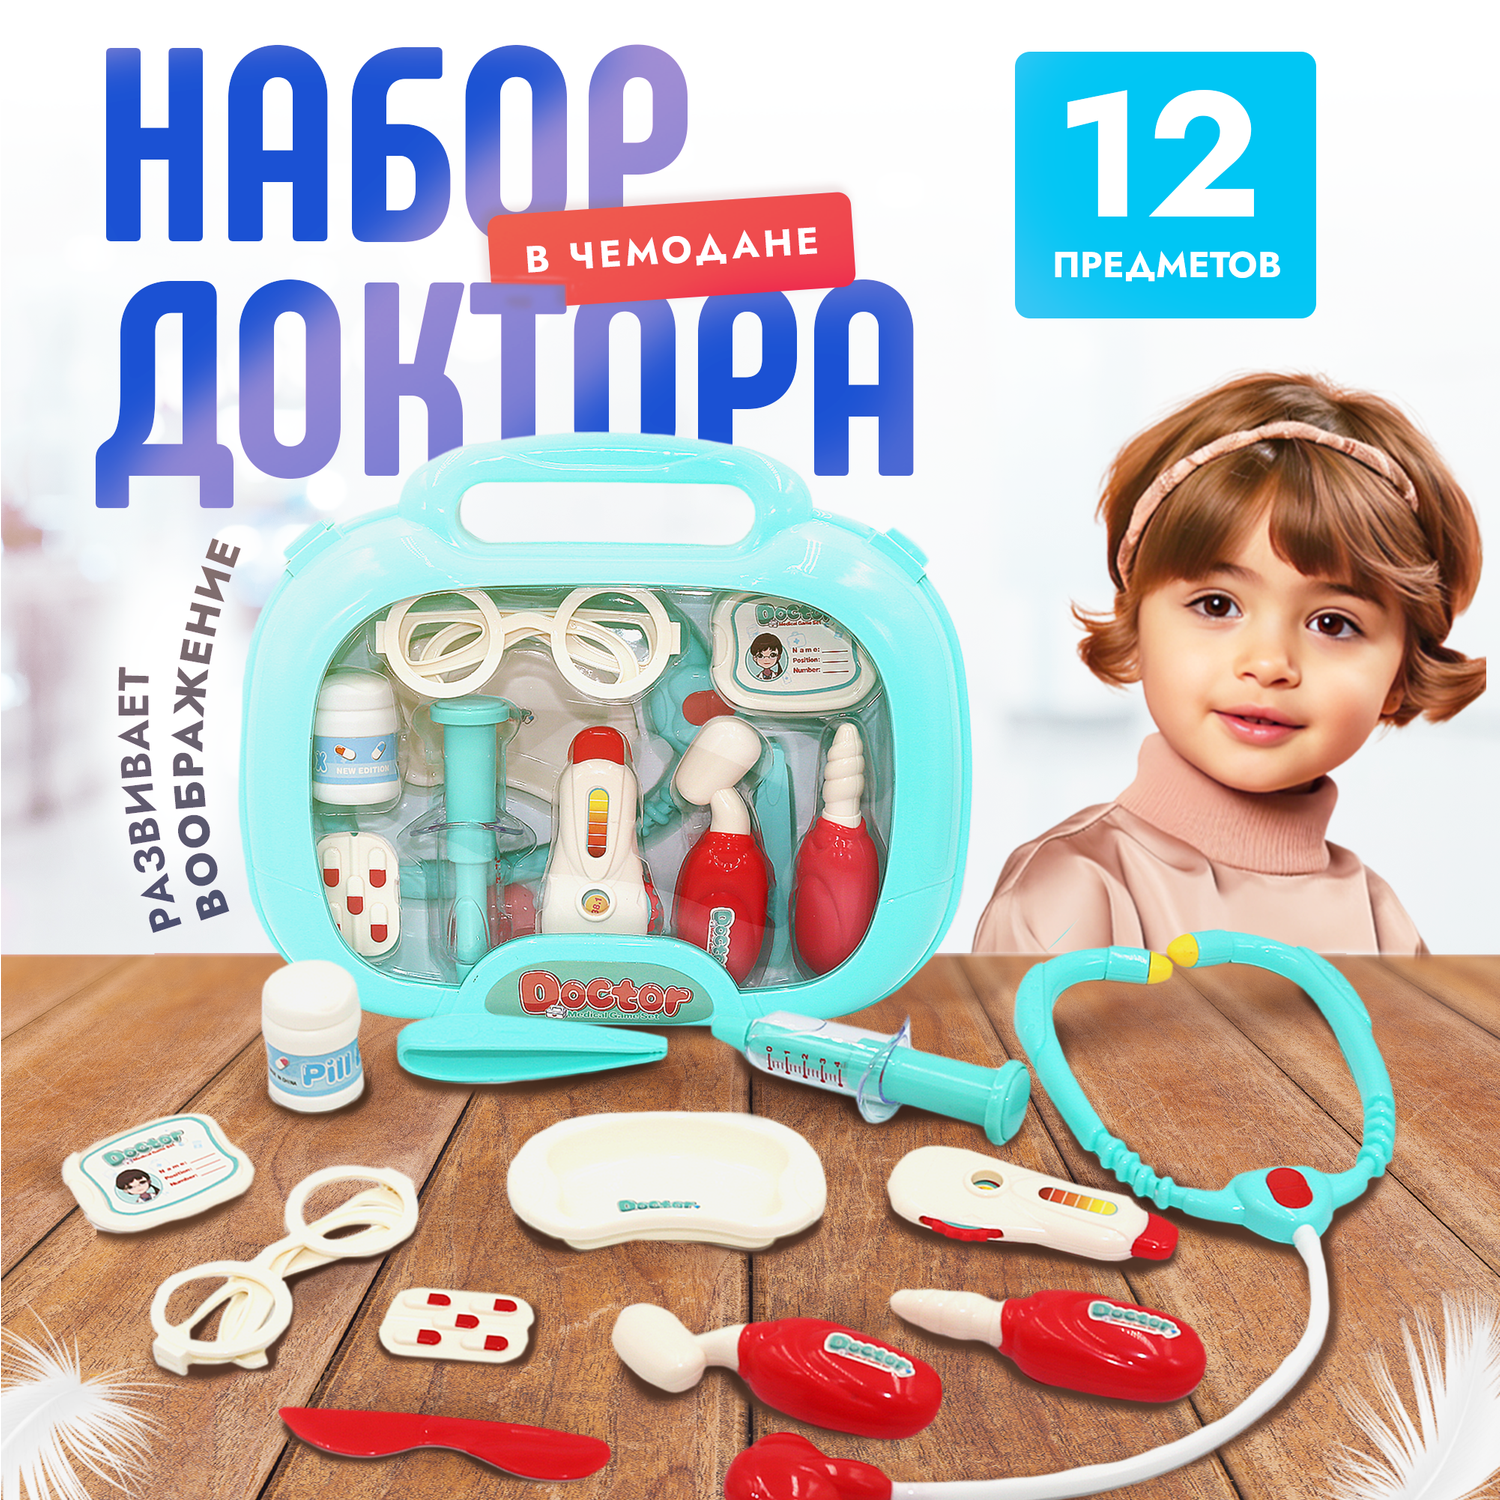 Игровой набор Доктор SHARKTOYS в чемоданчике 13 предметов для ребенка - фото 1